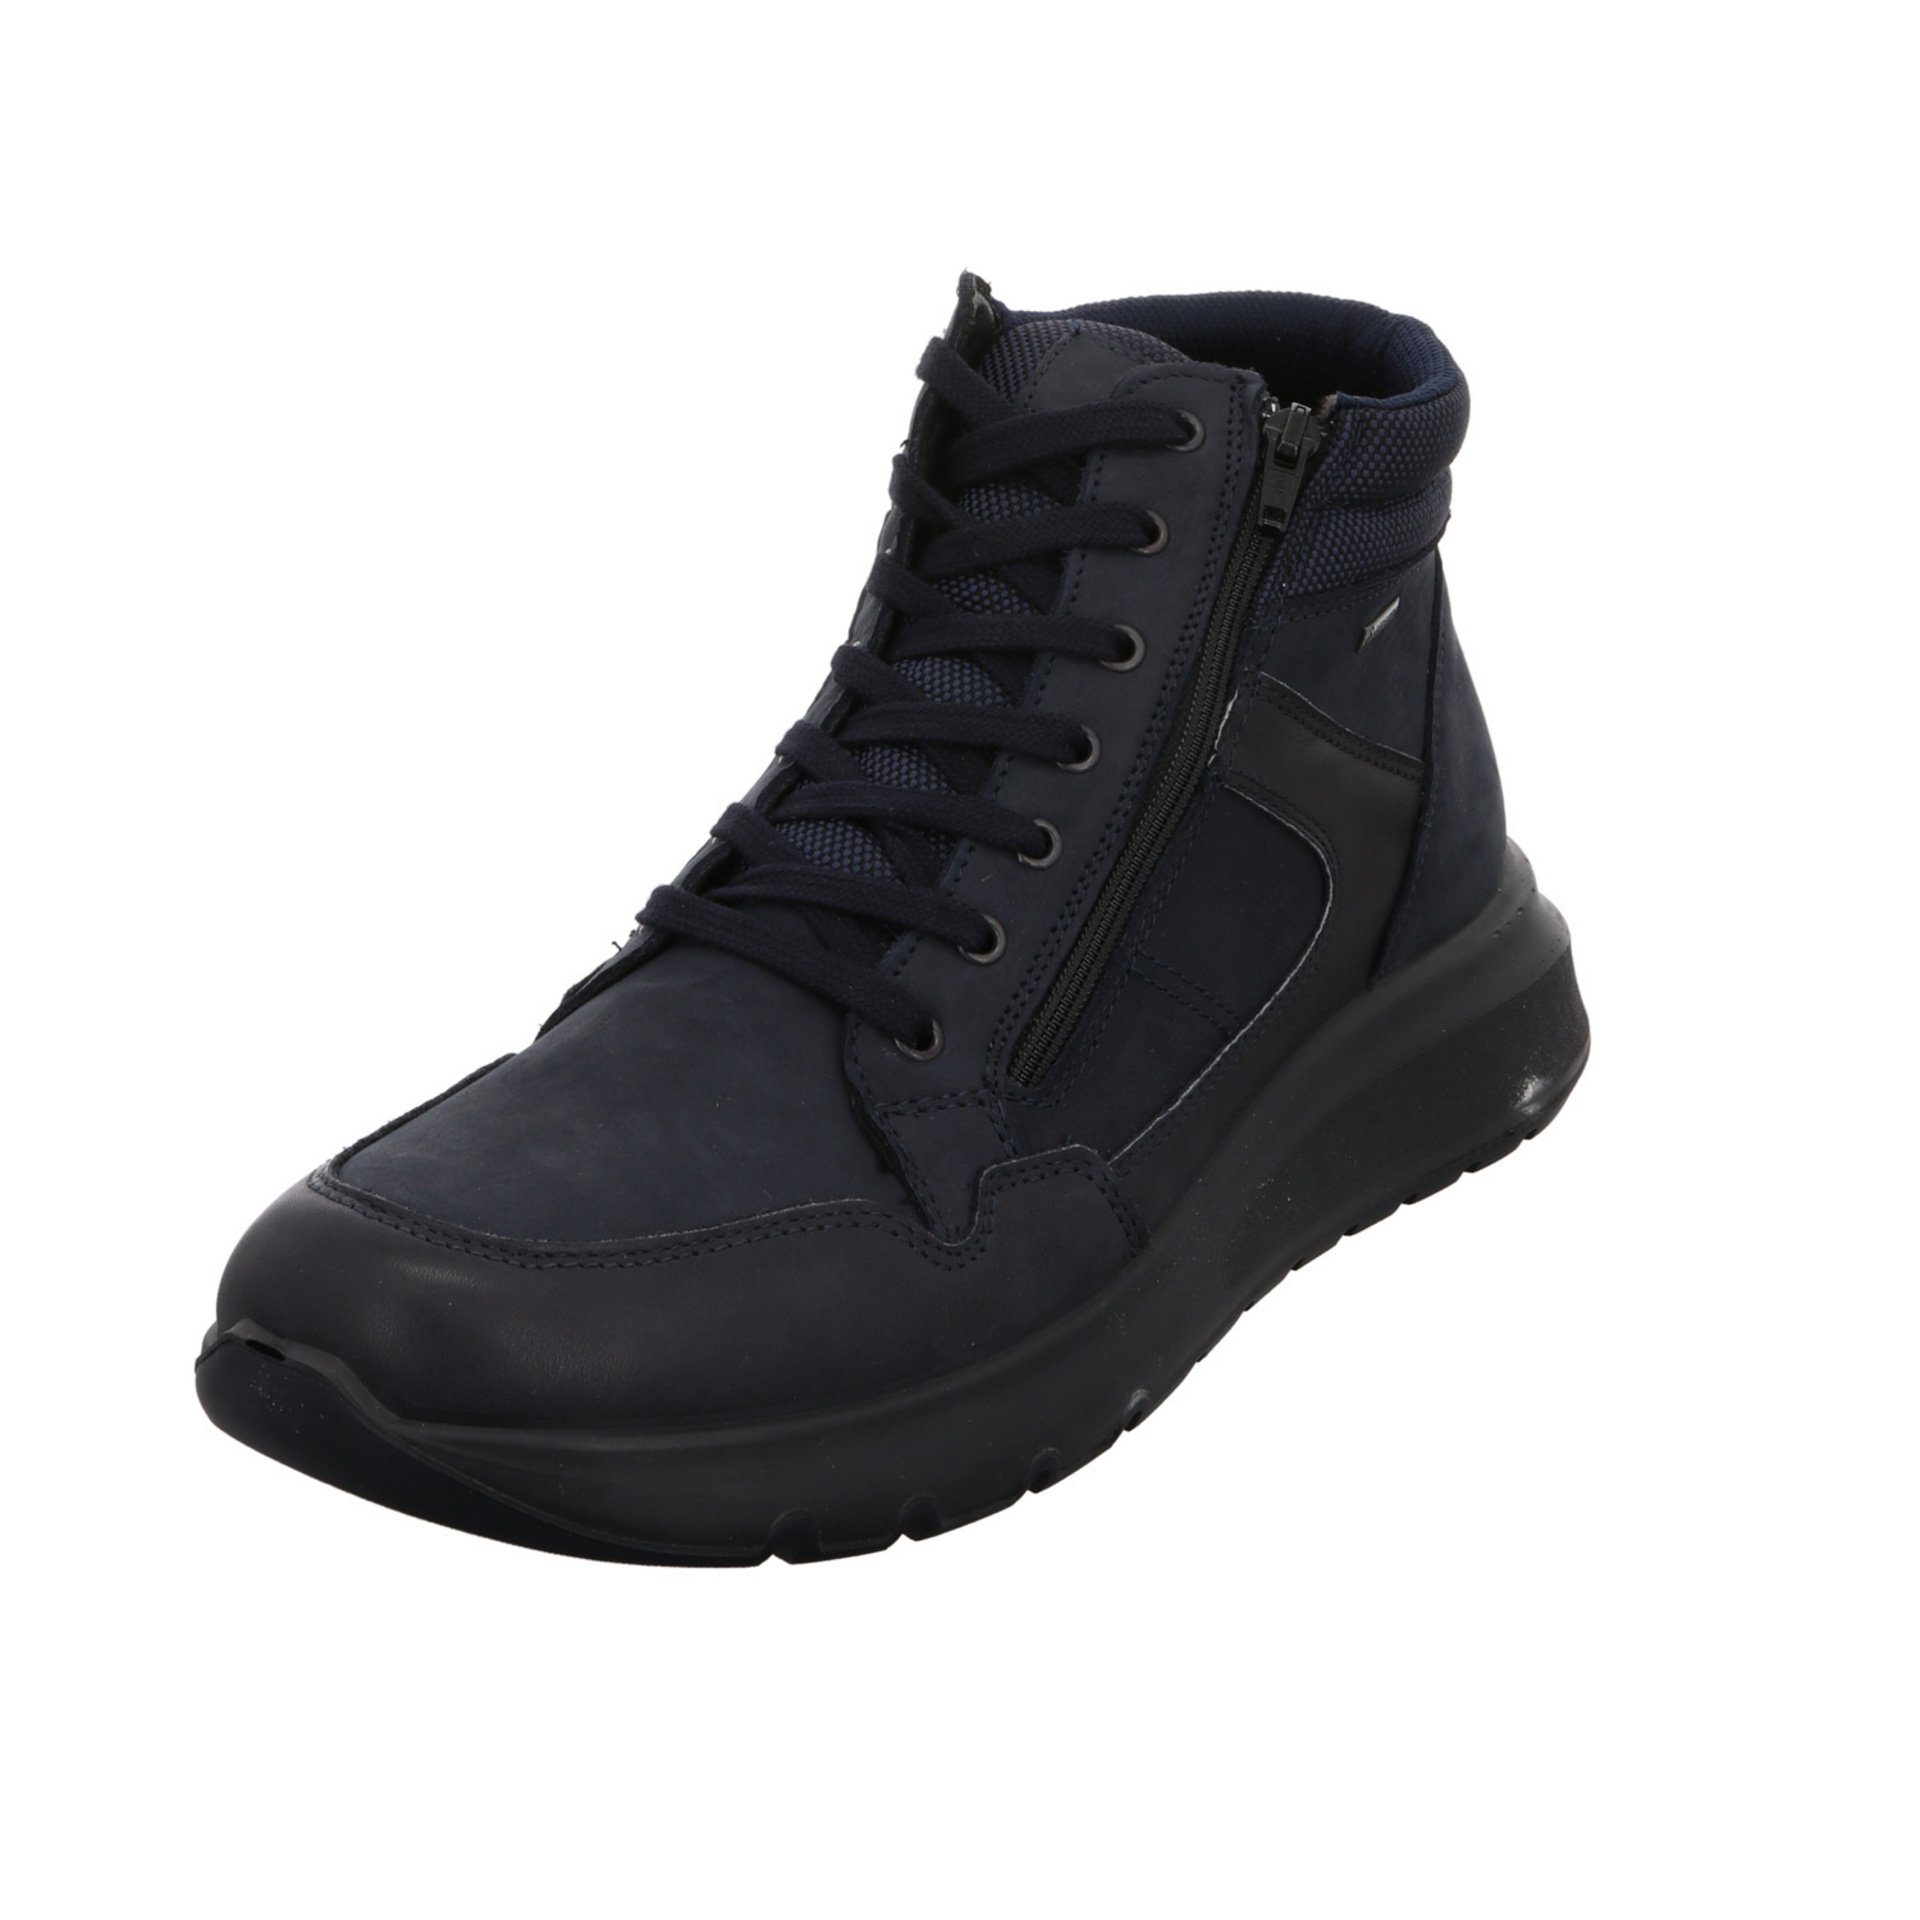 Ara Herren Winterstiefel Schuhe Arizona Boots Chelseaboots Leder-/Textilkombination blau 046486